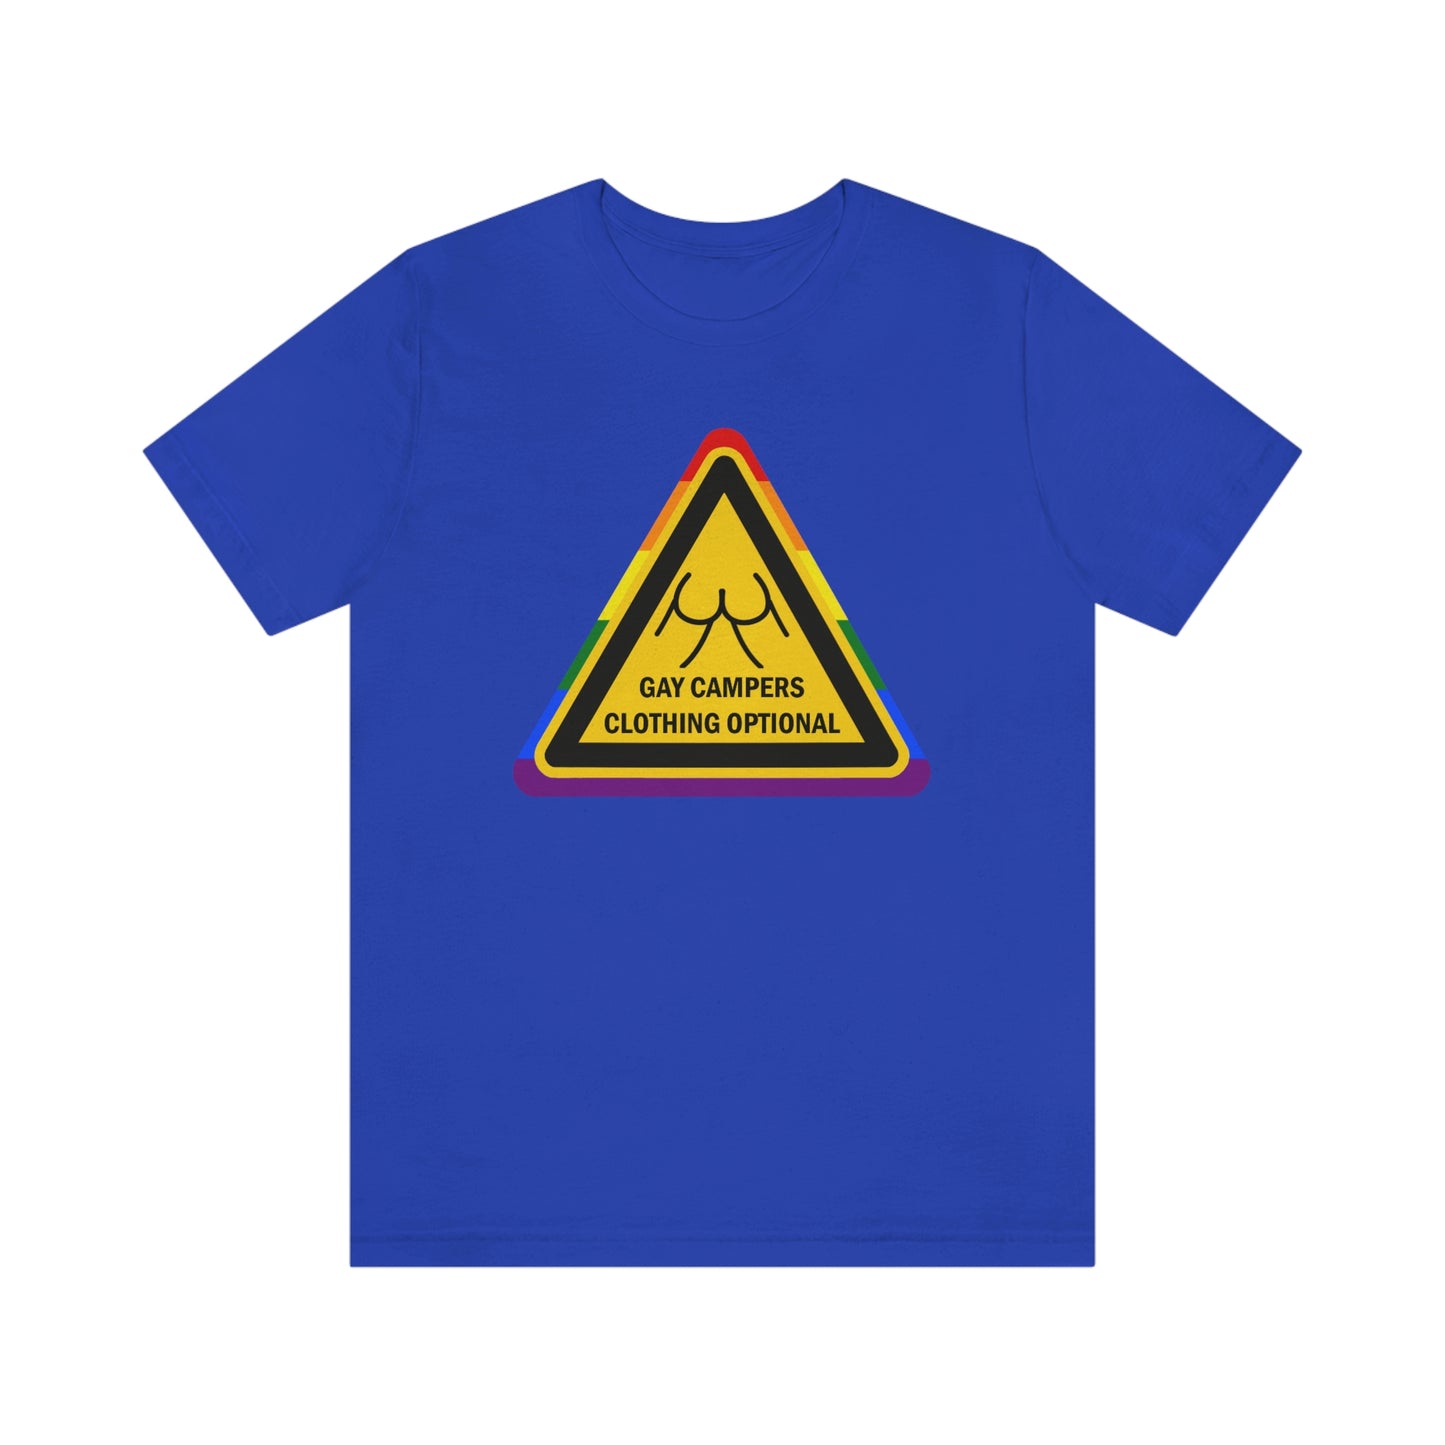 Campeurs gays - Panneau d’avertissement de vêtements en option T-shirt unisexe pour adultes